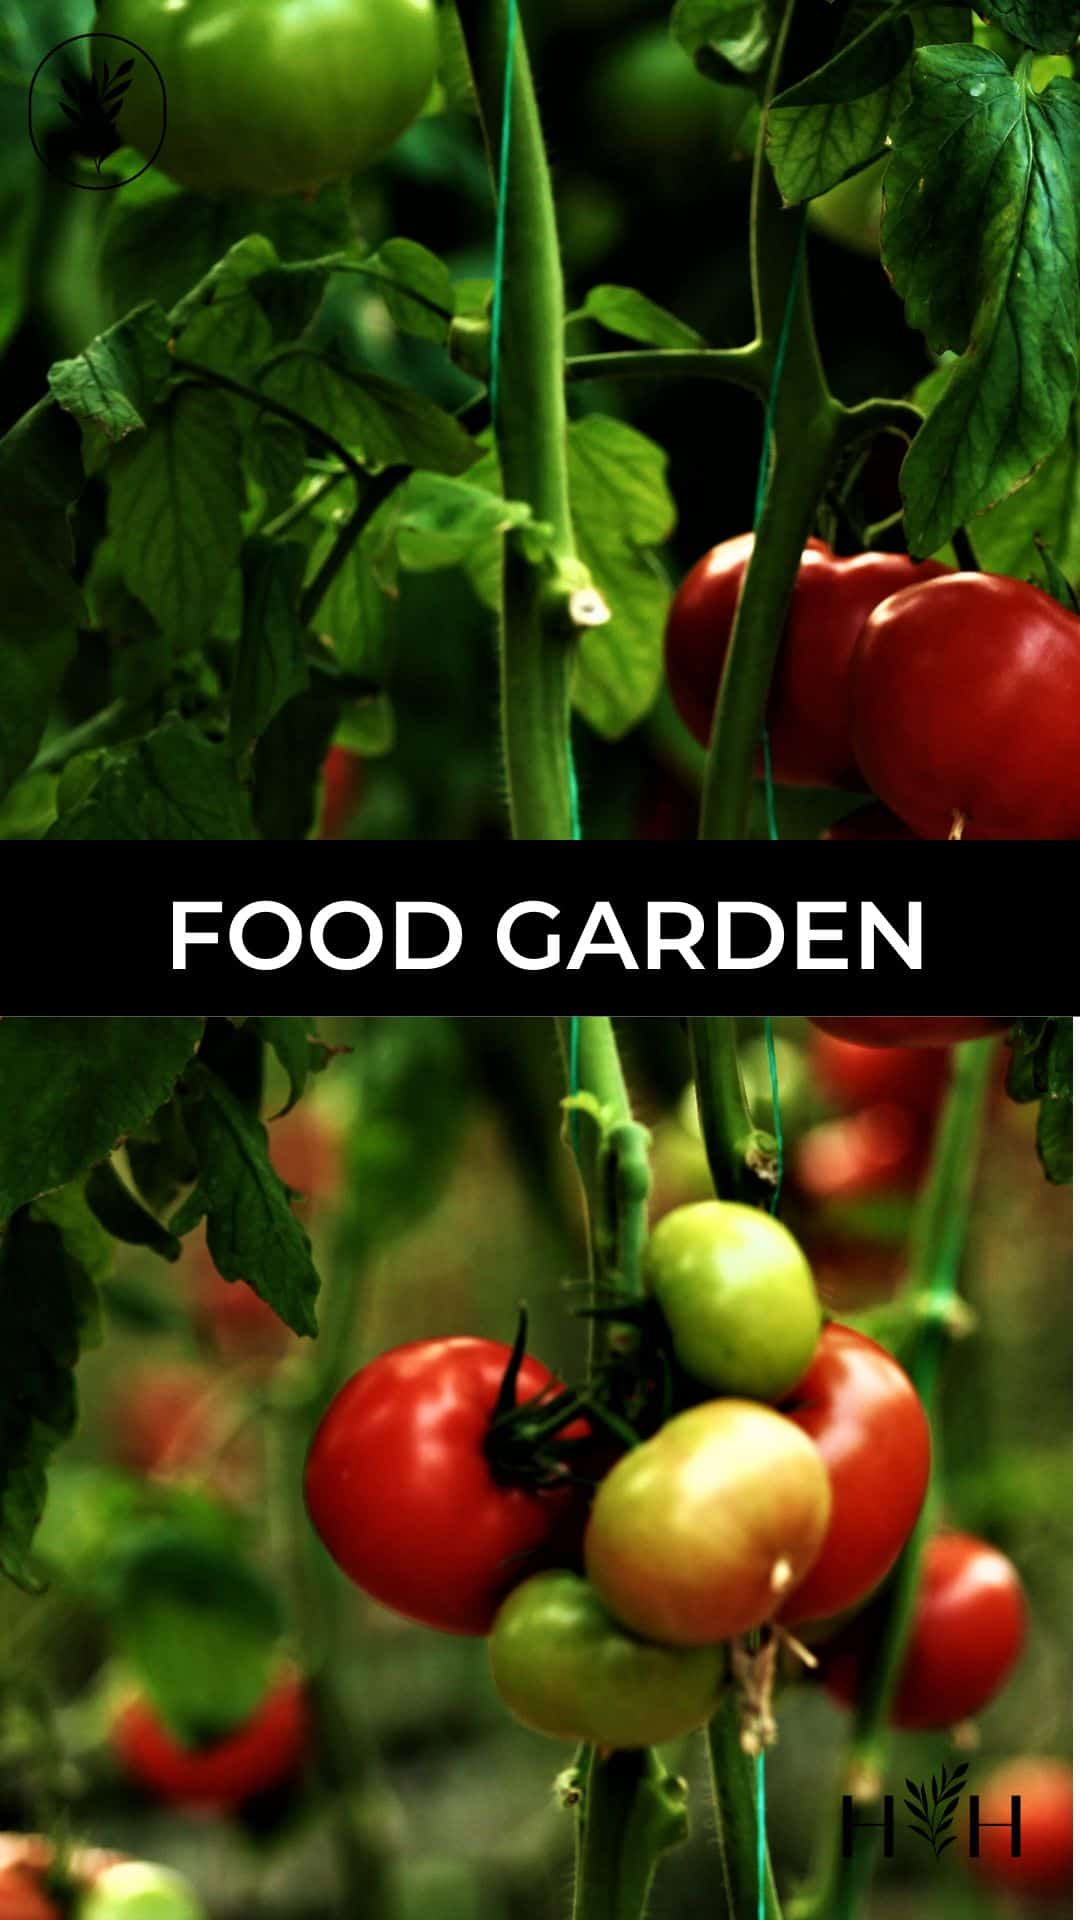 Food garden via @home4theharvest